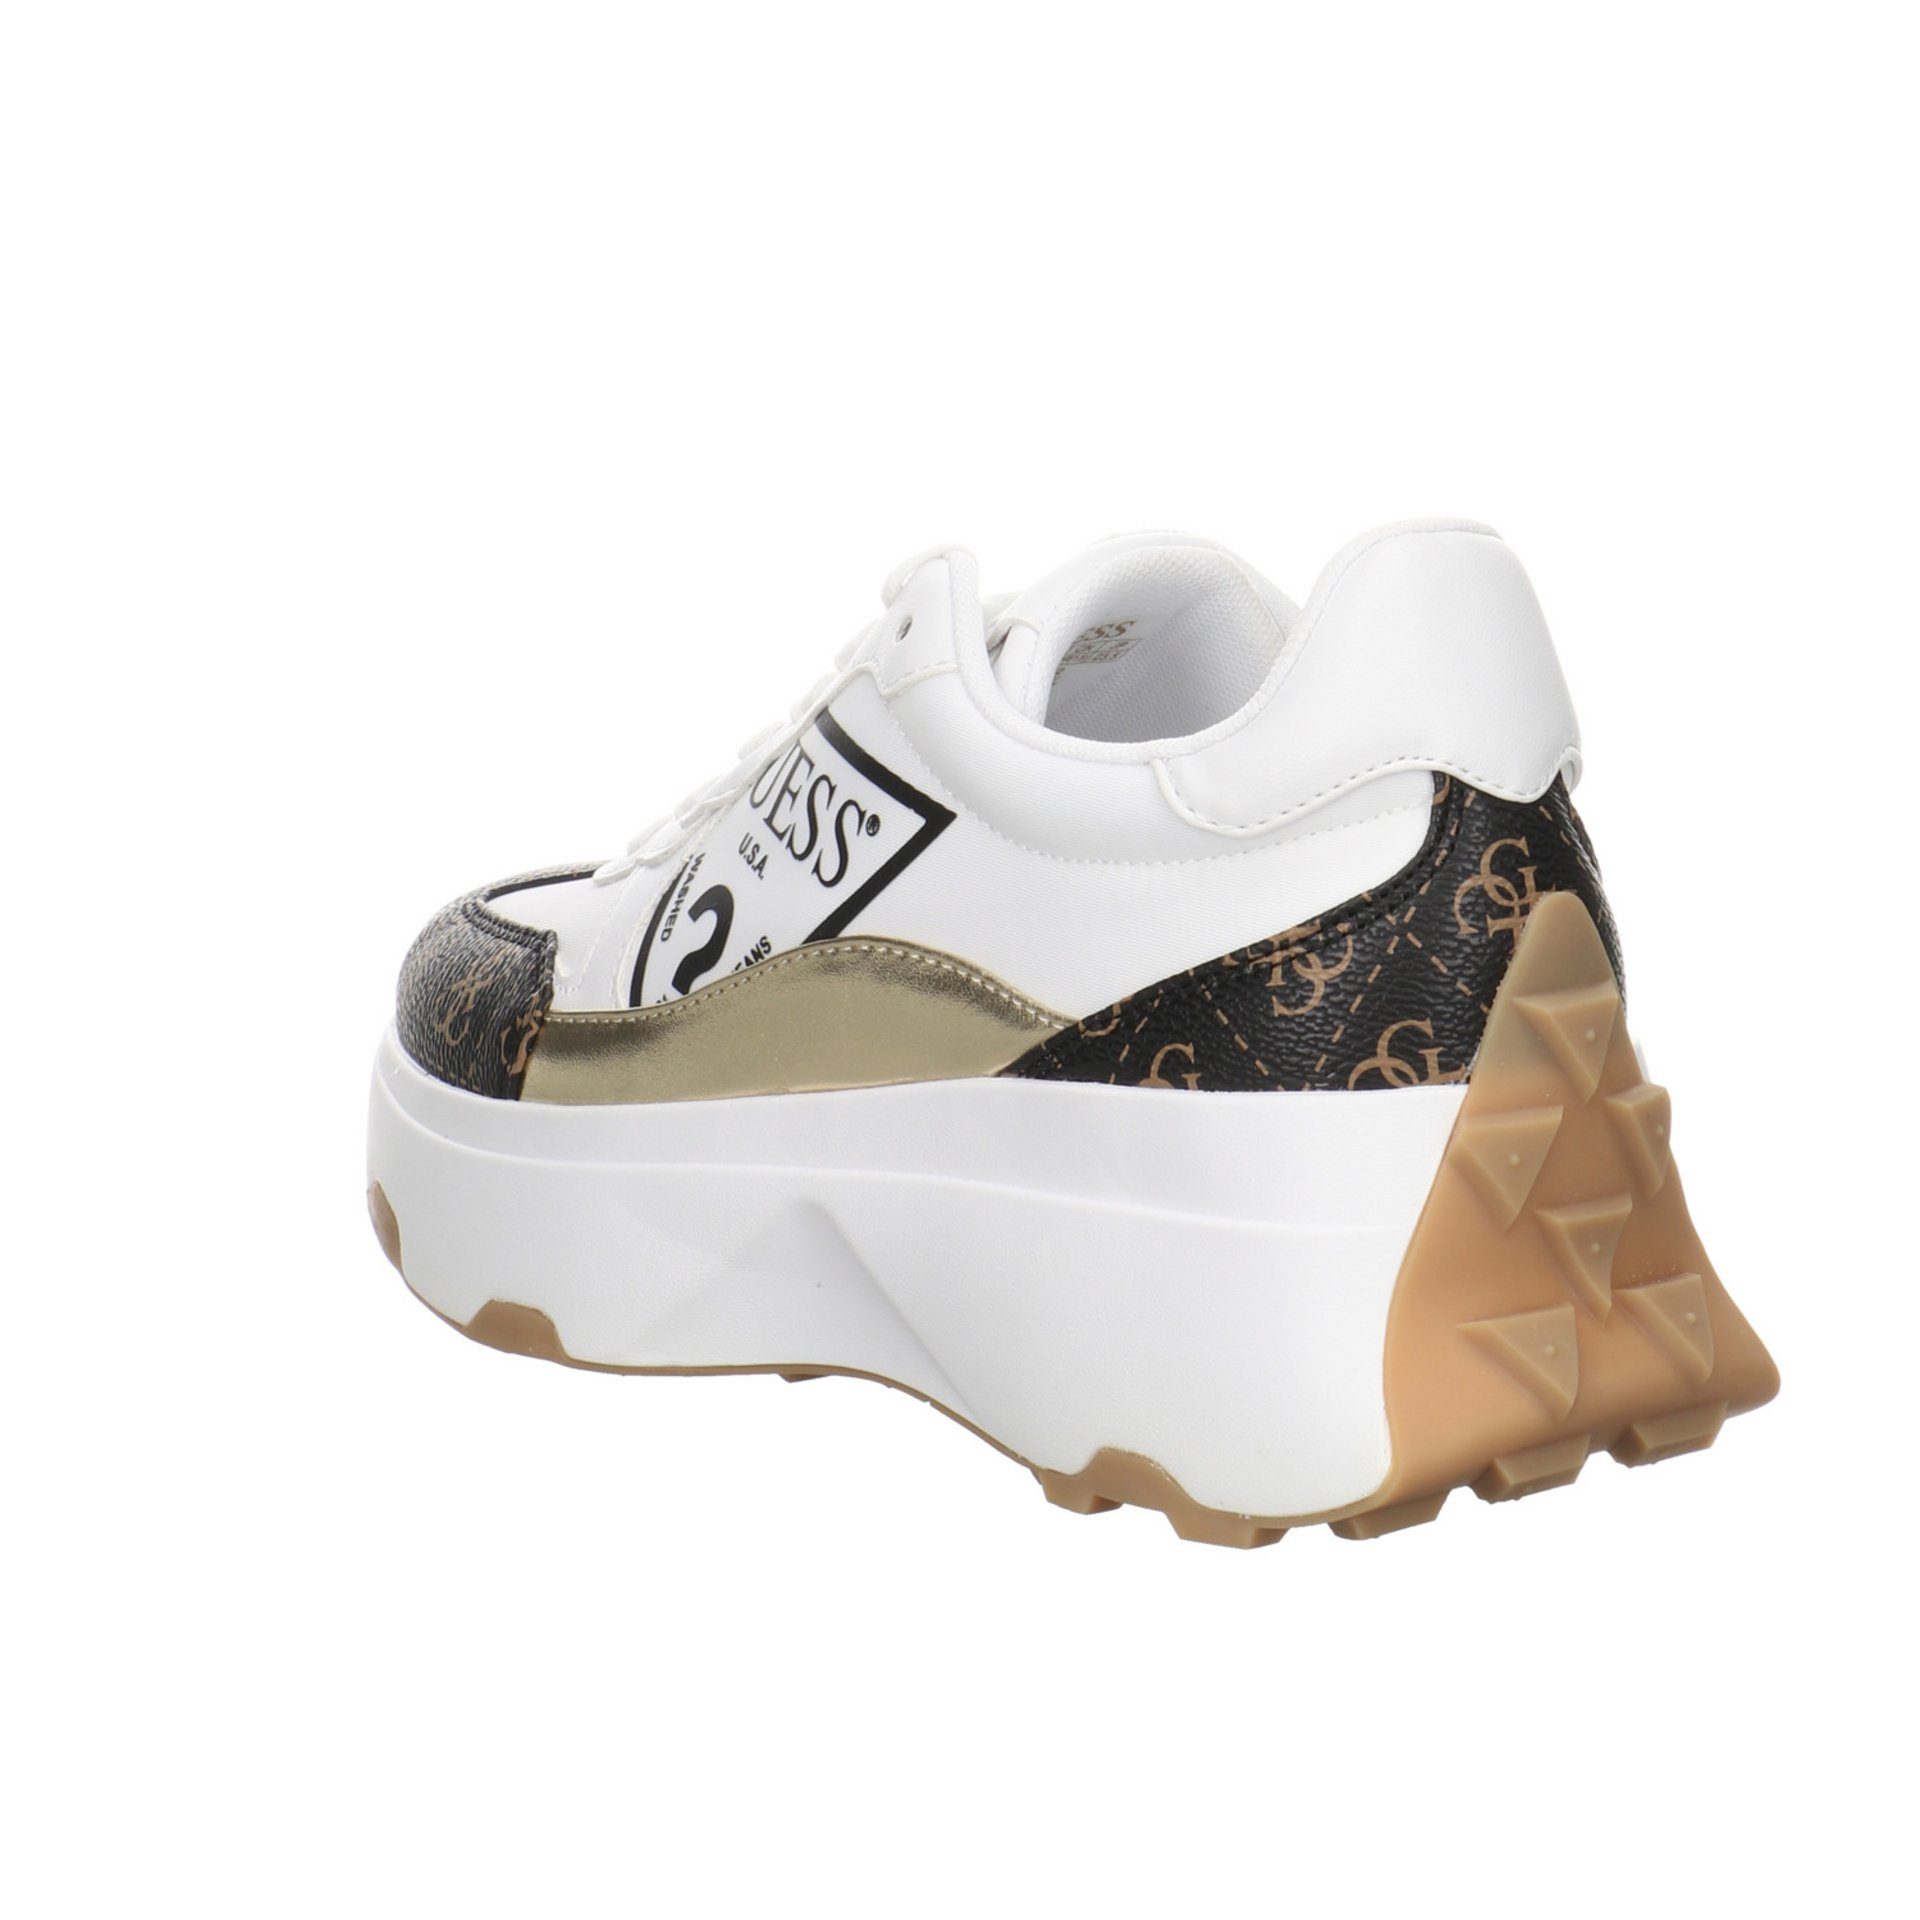 GUESS CONNECT Guess Damen Sneaker Schuhe Calebb Runner Schnürschuh Sneaker Synthetikkombination white/brown/ocra